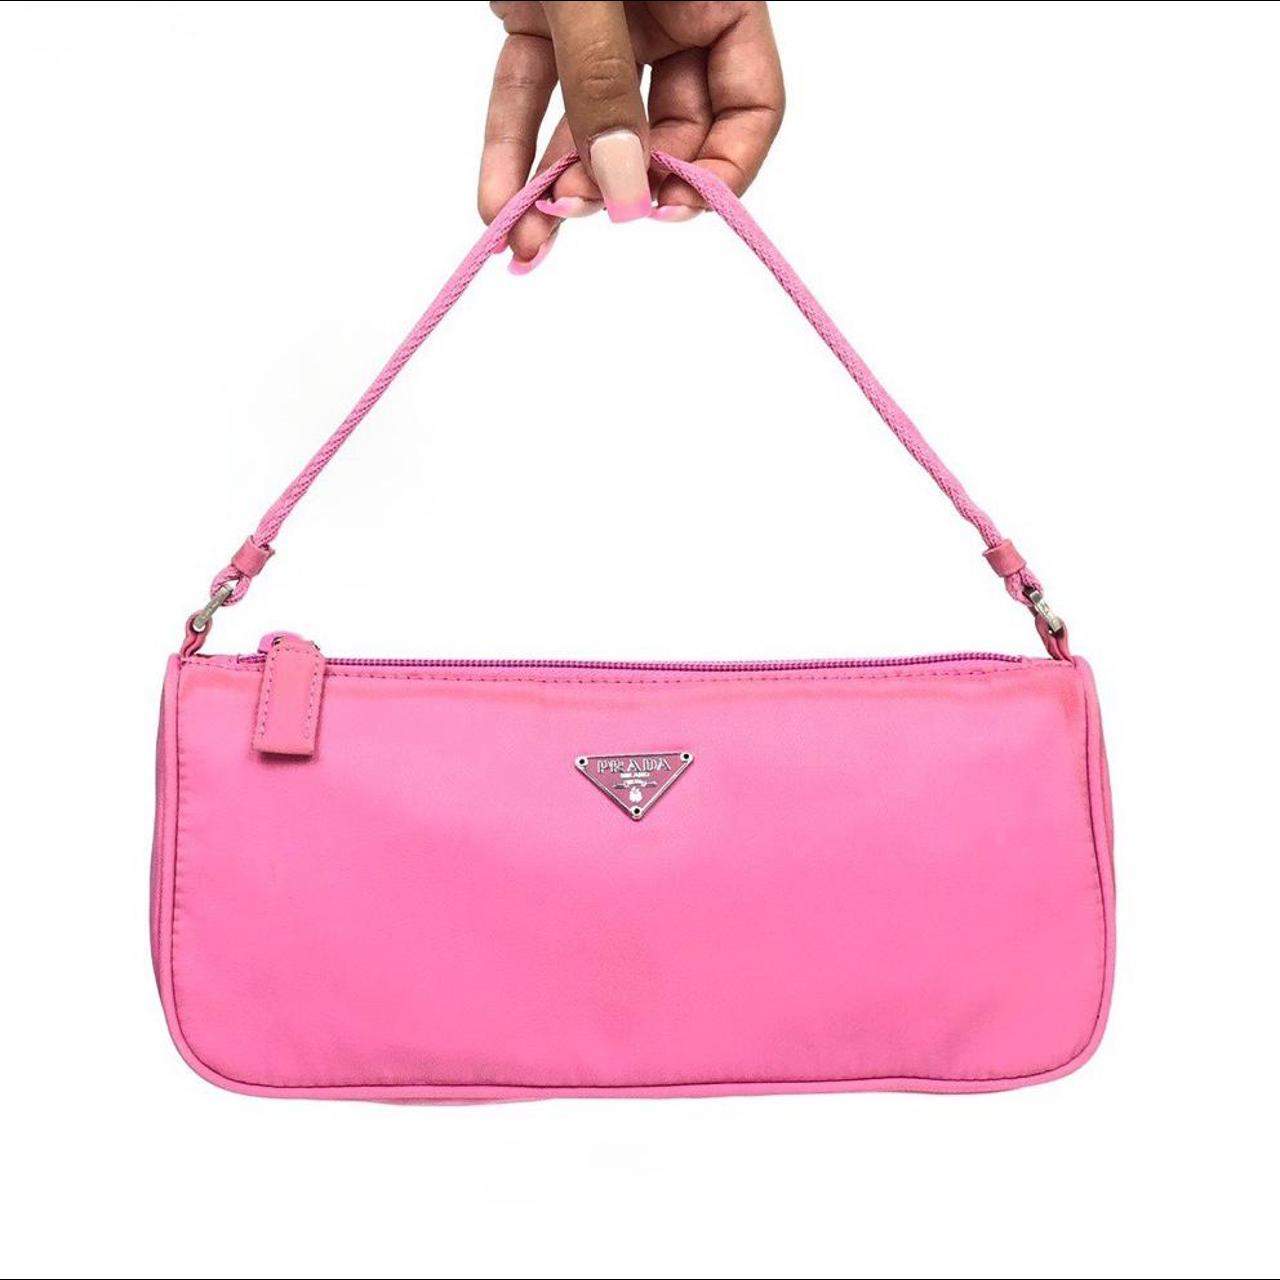 Authentic Prada Bag - Prada Nylon Shoulder/Handbag... - Depop